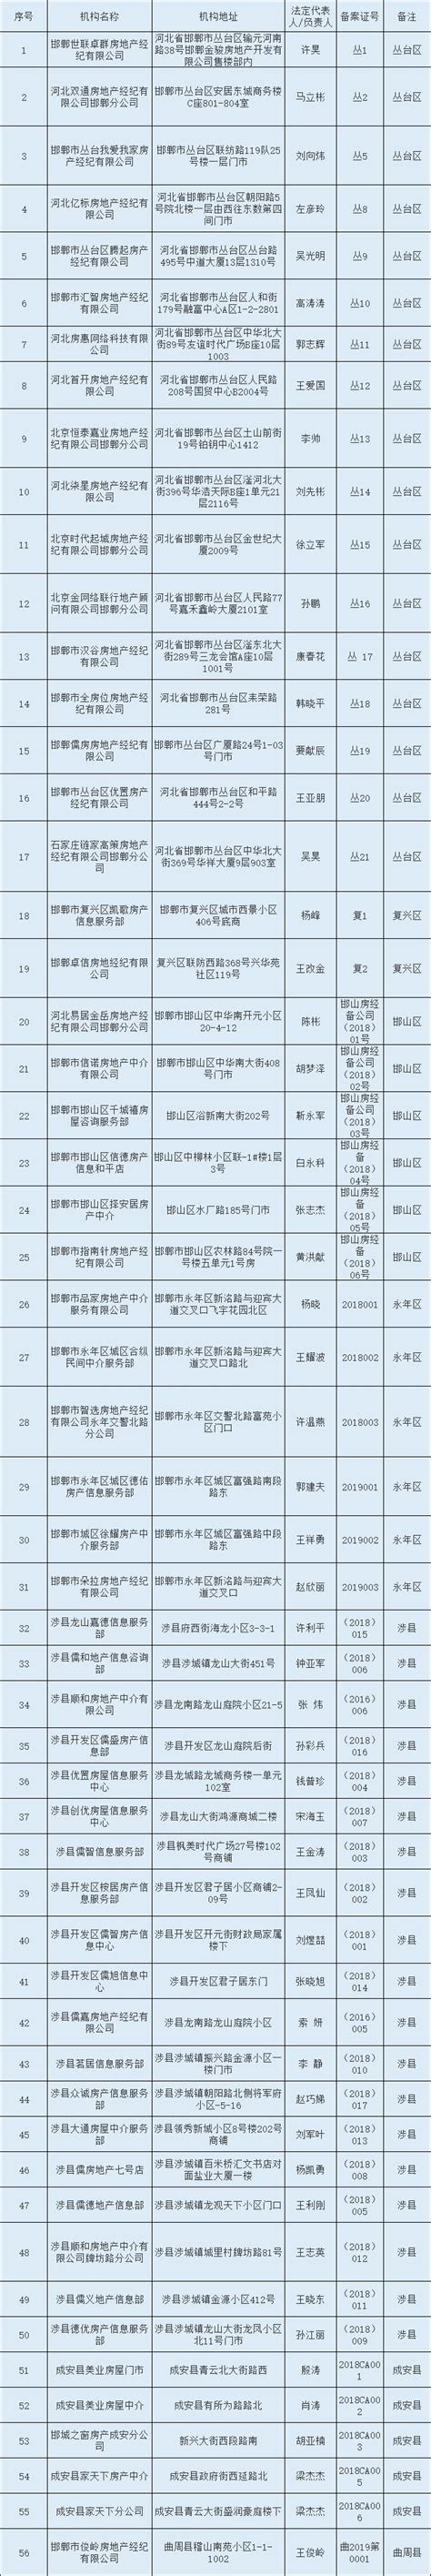 组织机构代码 - 上海雾王环保设备工程有限公司